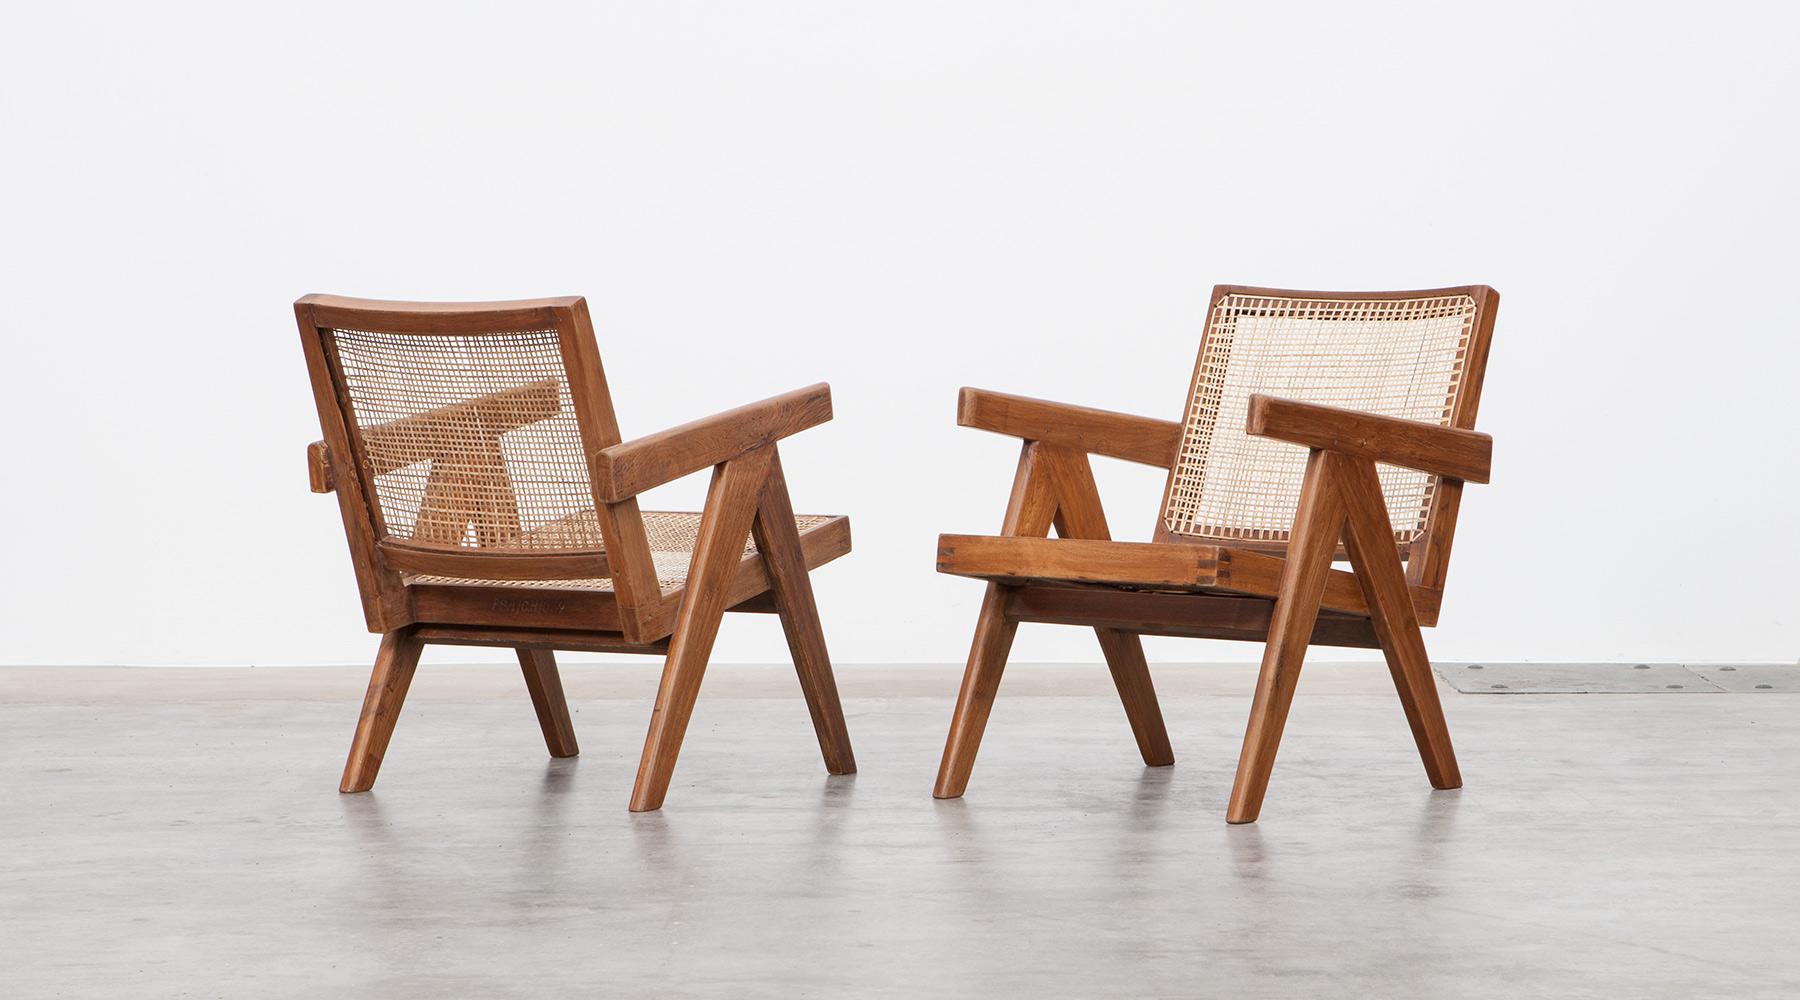 Ein Paar Sessel aus Teakholz:: entworfen von Pierre Jeanneret:: Chandigarh:: Indien:: 1955. 

Diese von Pierre Jeanneret entworfenen originalen Loungesessel aus Teakholz mit geflochtenem Rohr auf der Sitzfläche und geschwungener Rückenlehne